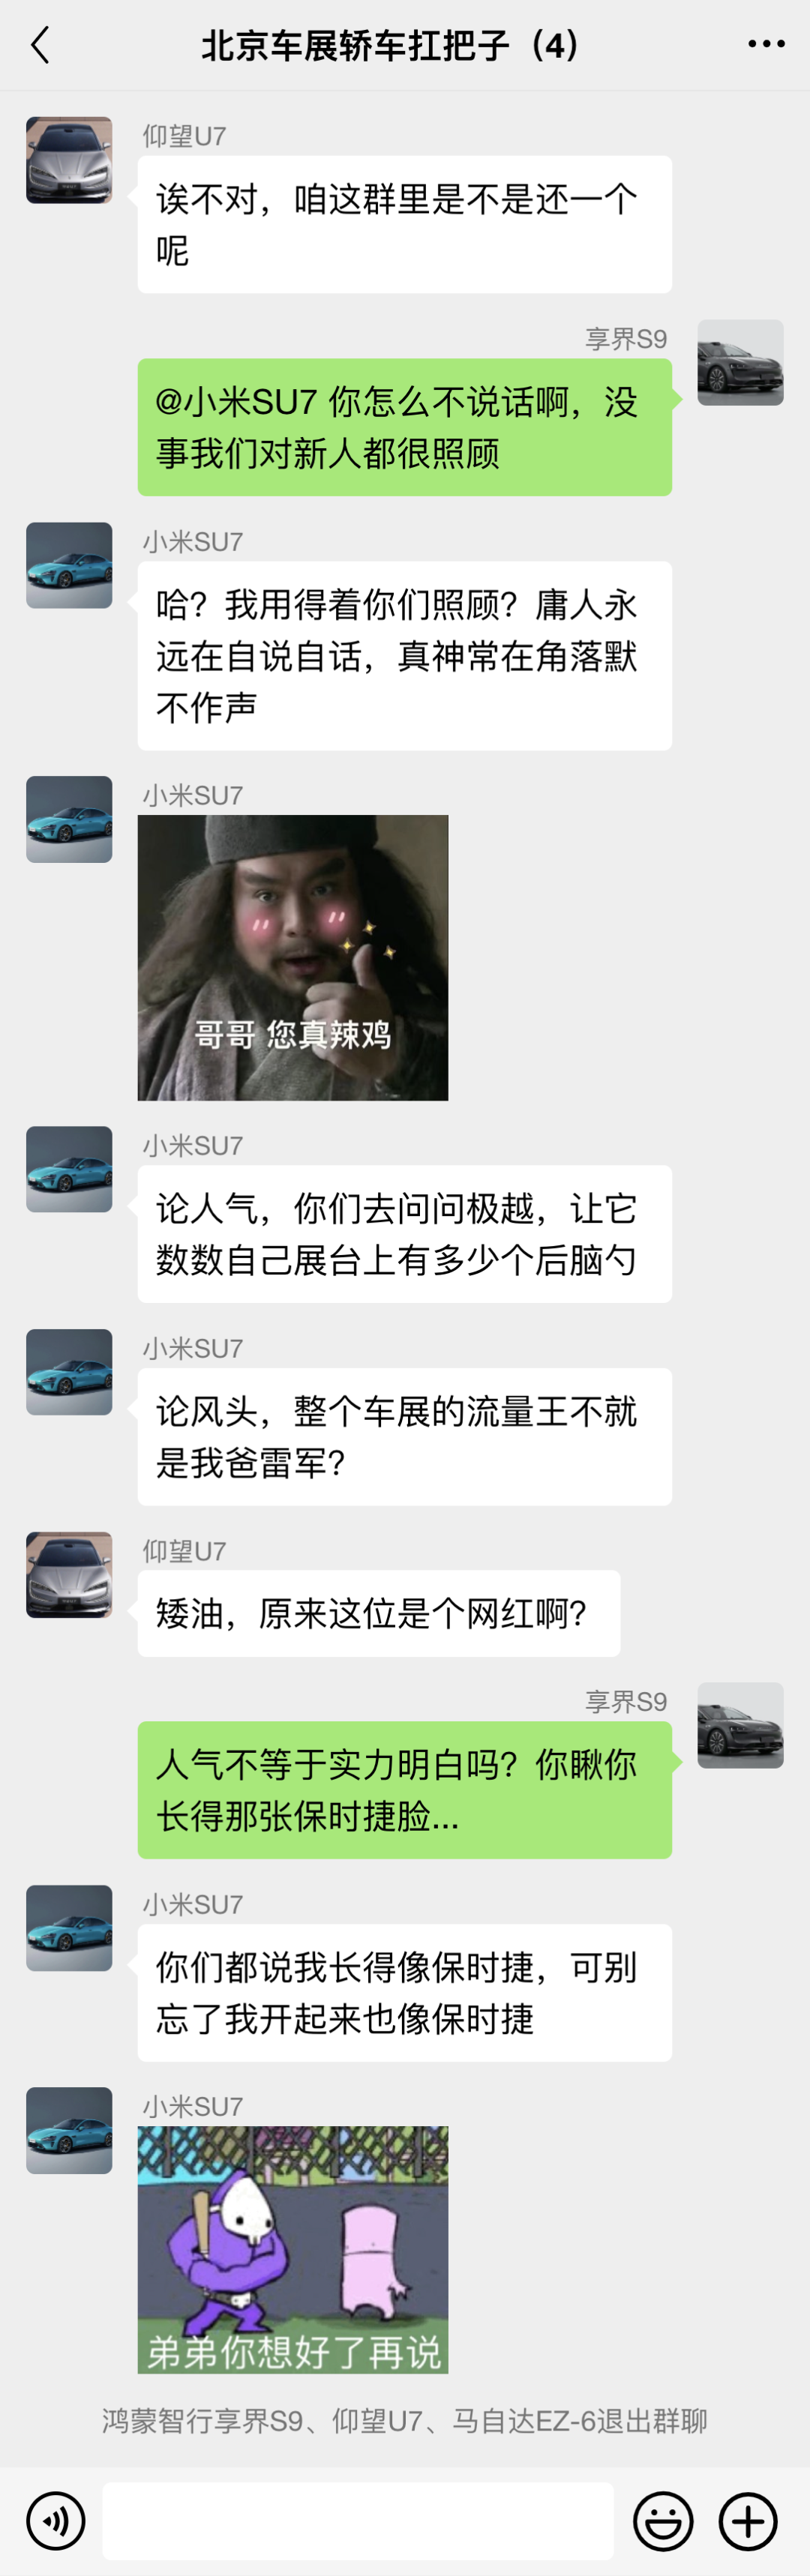 北京车展轿车扛把子开群聊，互相不服气，是啥让他们秒退群？